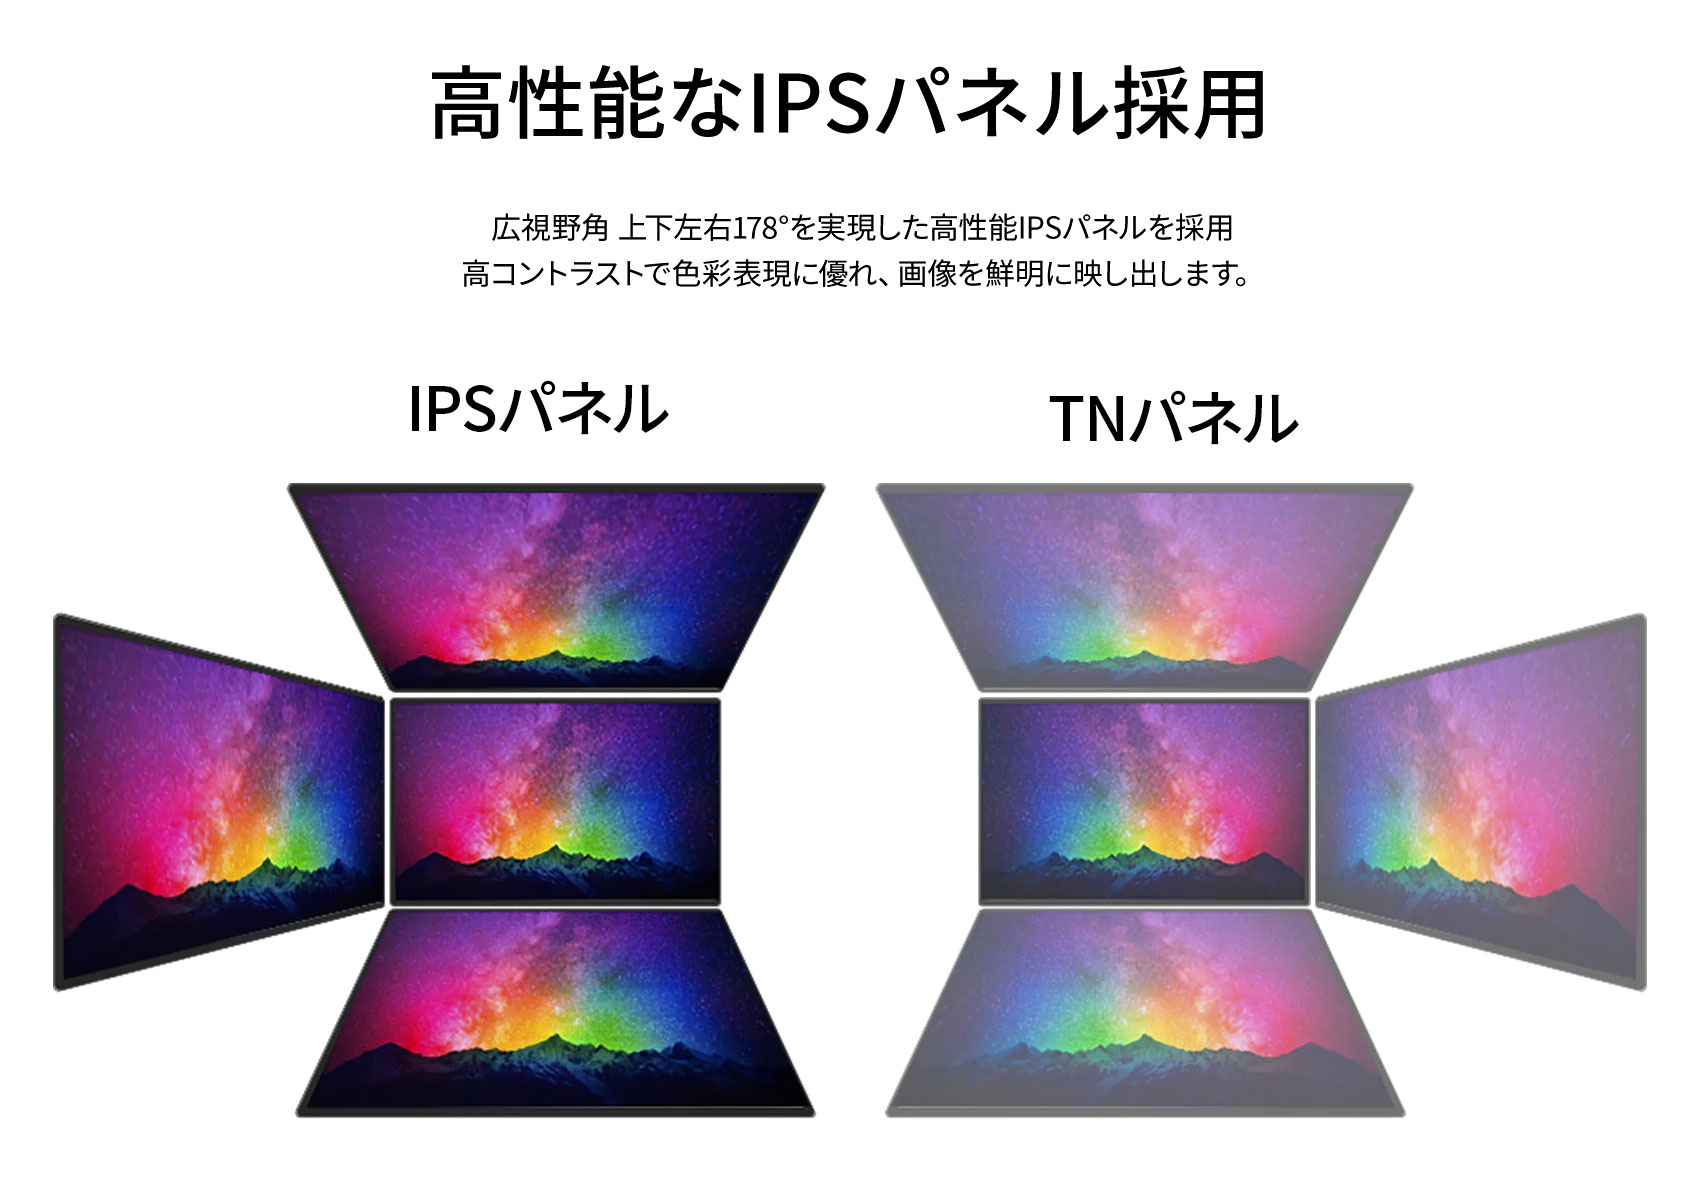 JAPANNEXT 27インチ IPSパネル Full HD(1920 x 1080) 144Hz 液晶